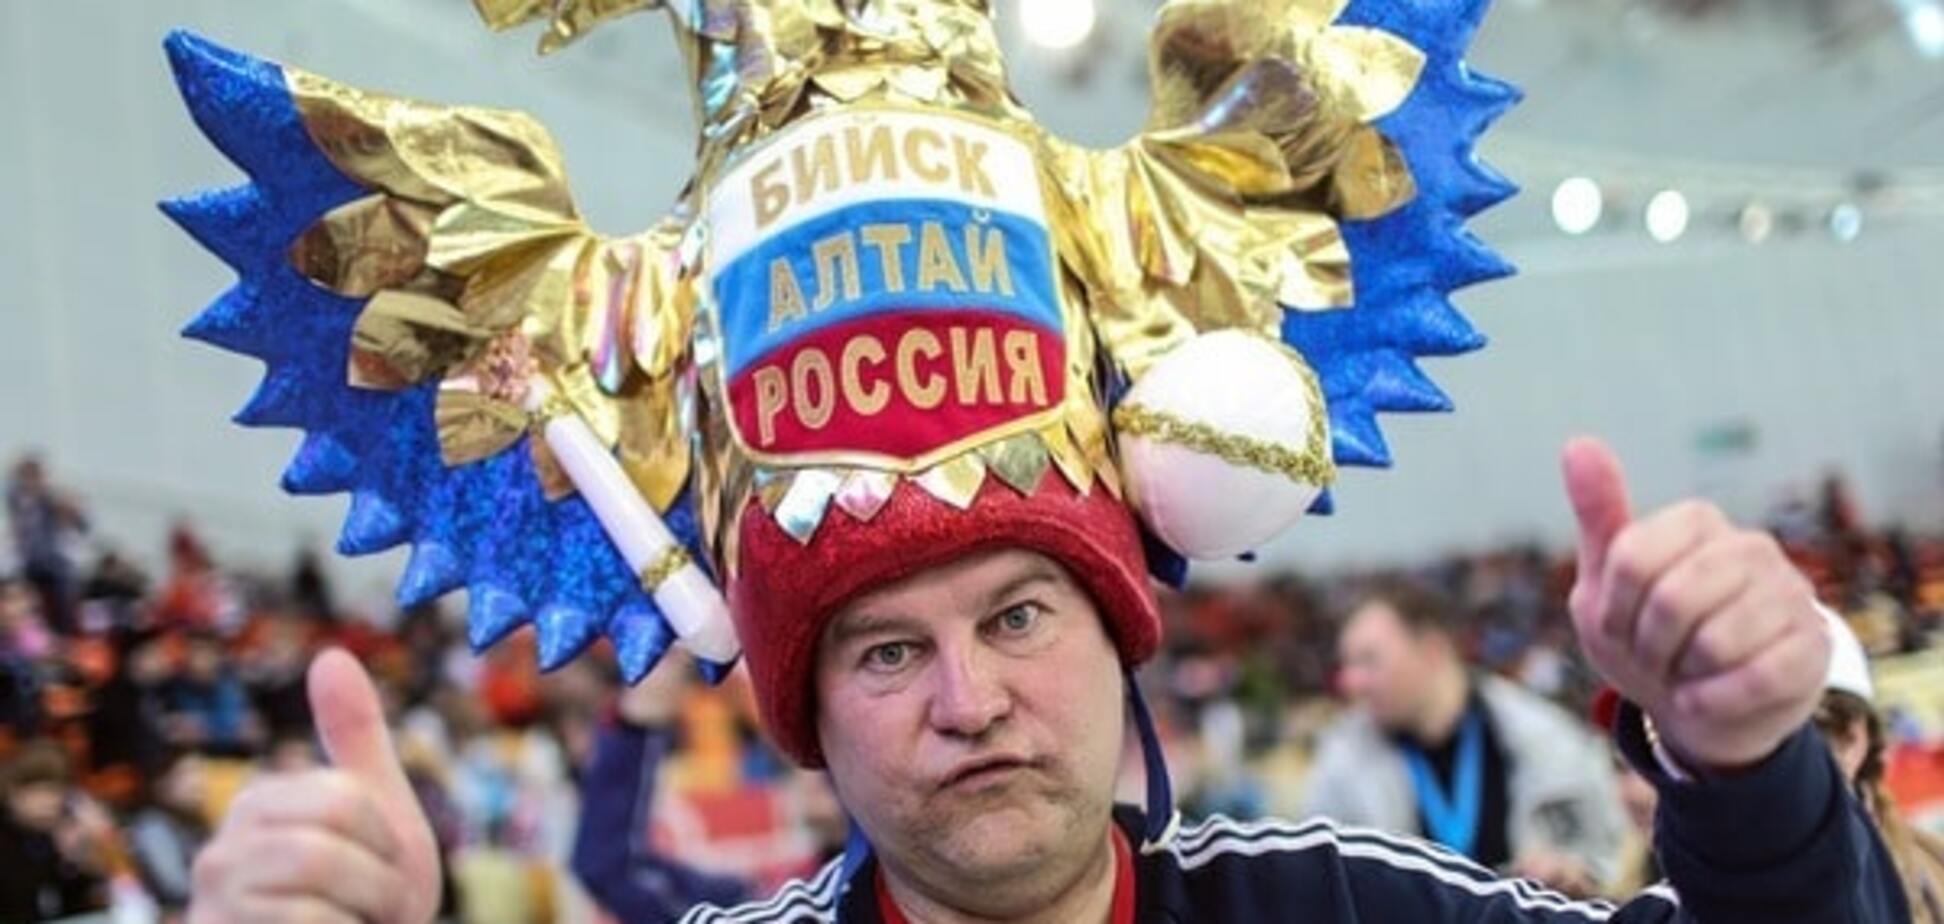 'Московия' или 'Россия': историк рассказал, как Украина должна называть РФ